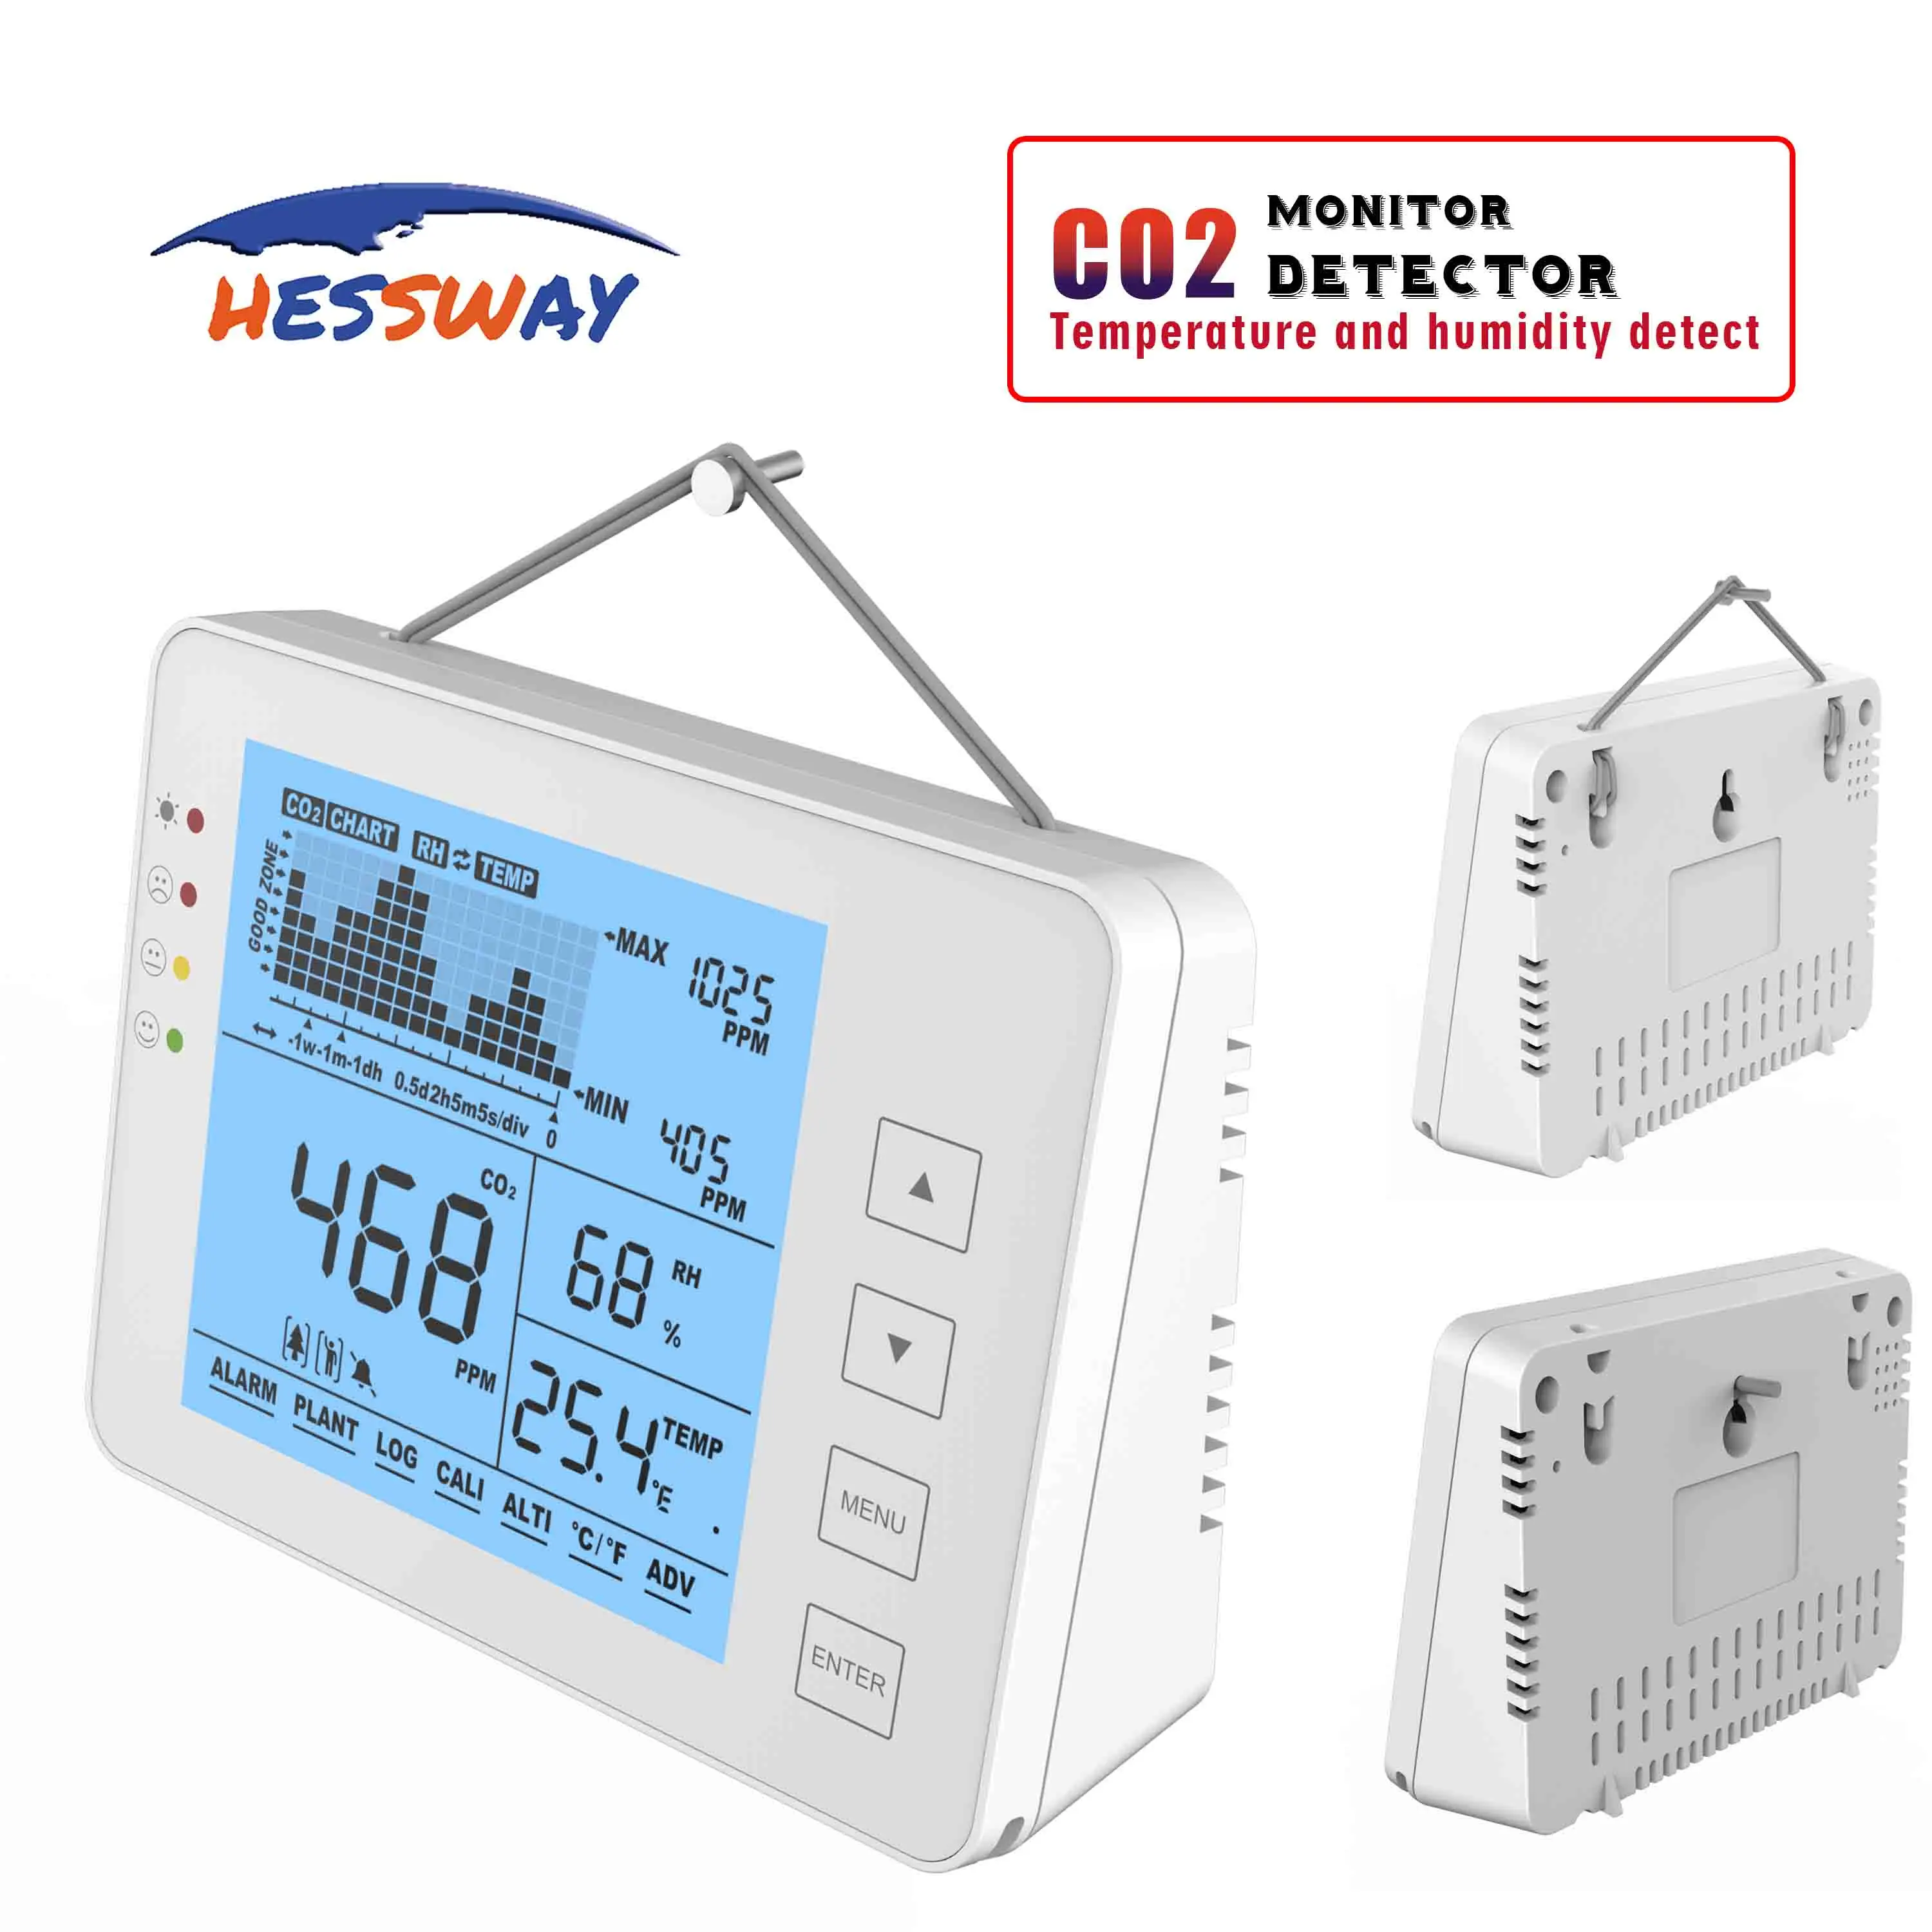 7 функция напоминания дня цифровой CO2 Монитор метр детектор утечки газа для системы сигнализации и датчик влажности температуры